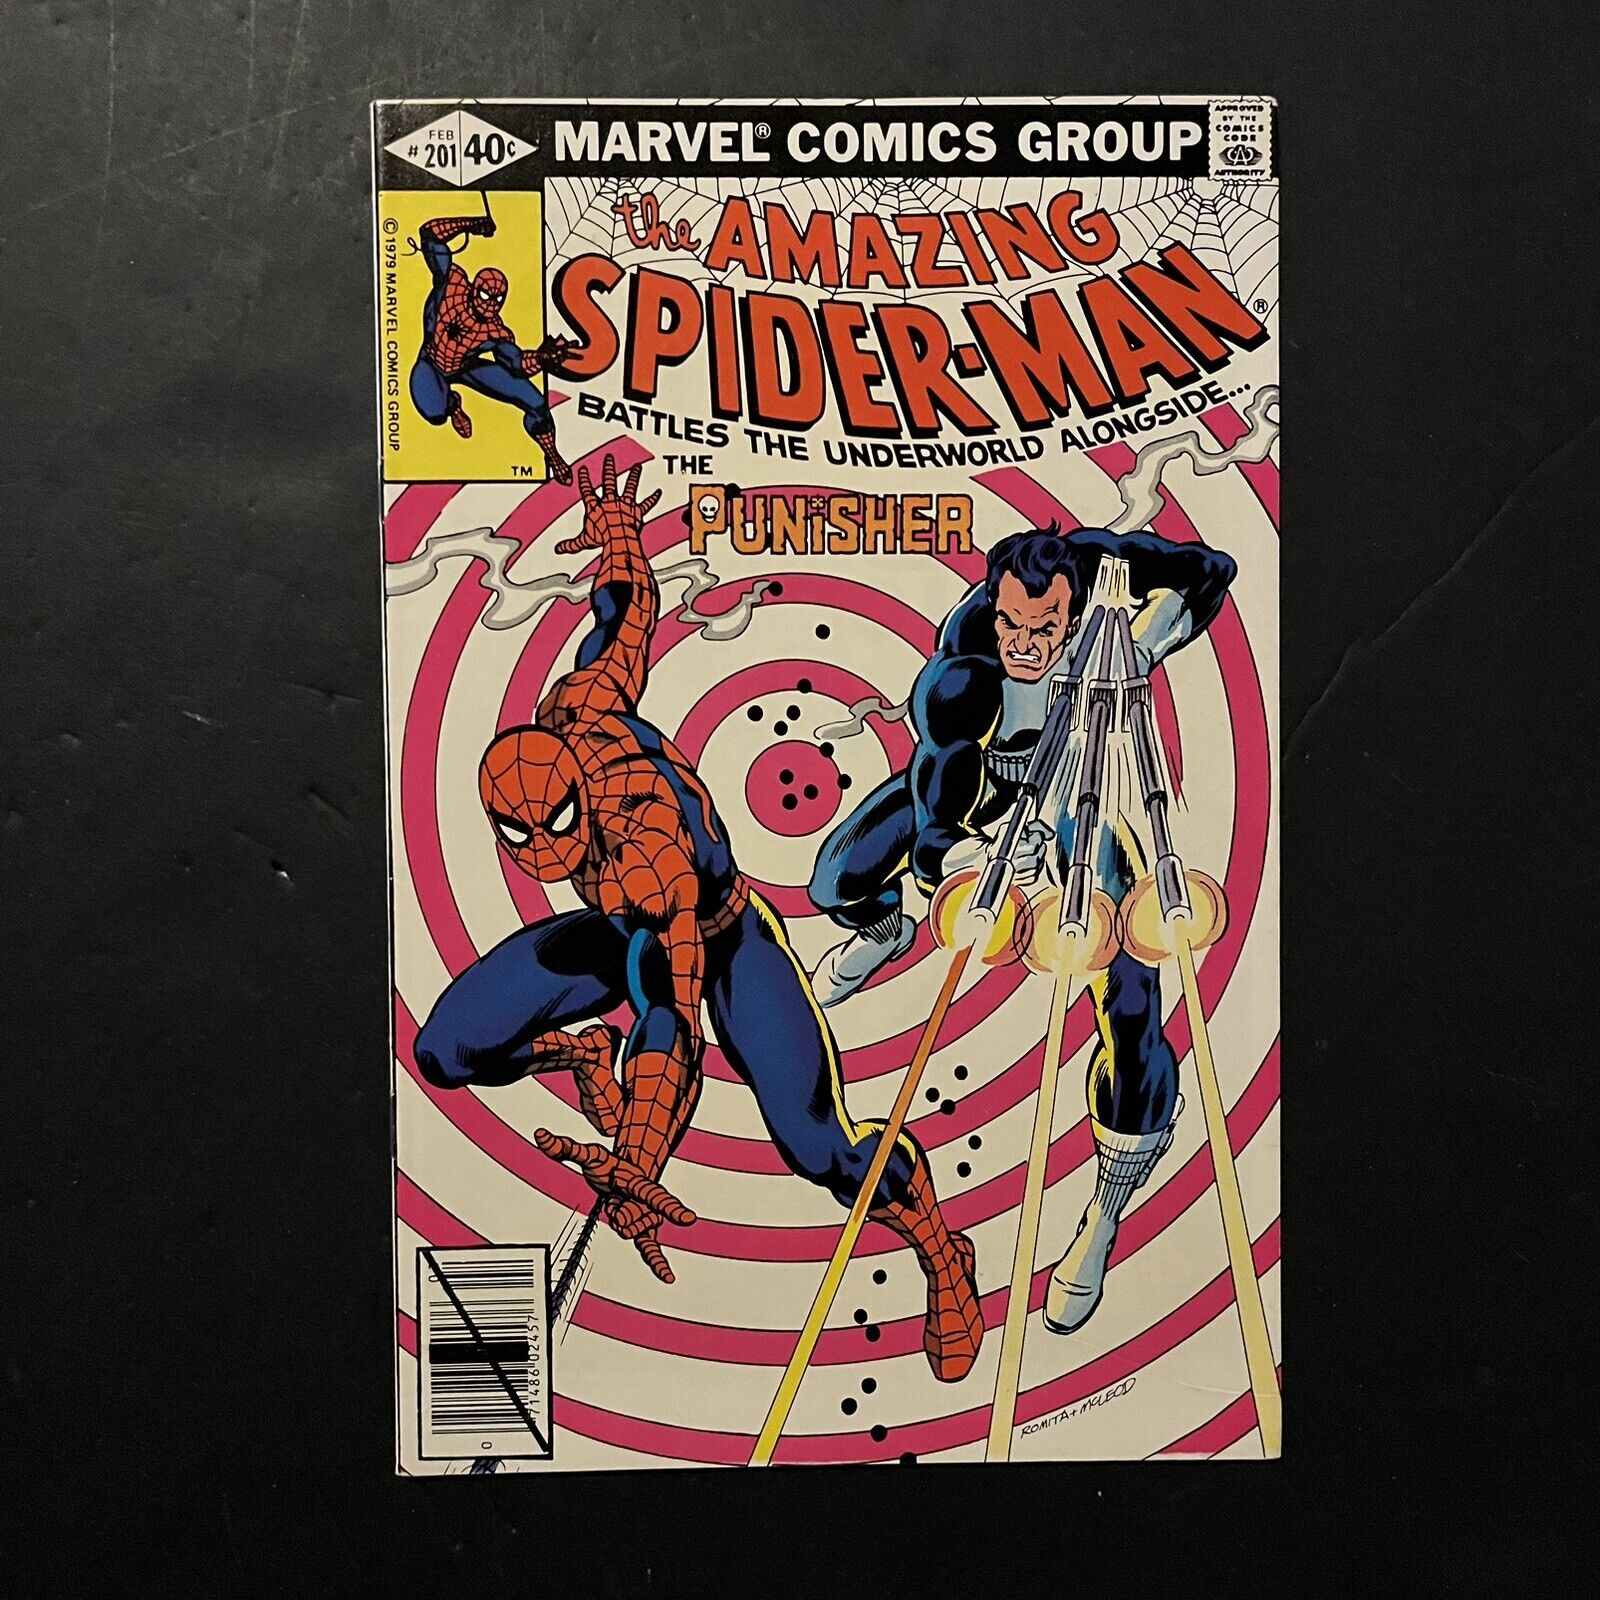 Amazing Spider-Man #201 VF/NM 9.0 Beauty -  Punisher John Romita Cover Art